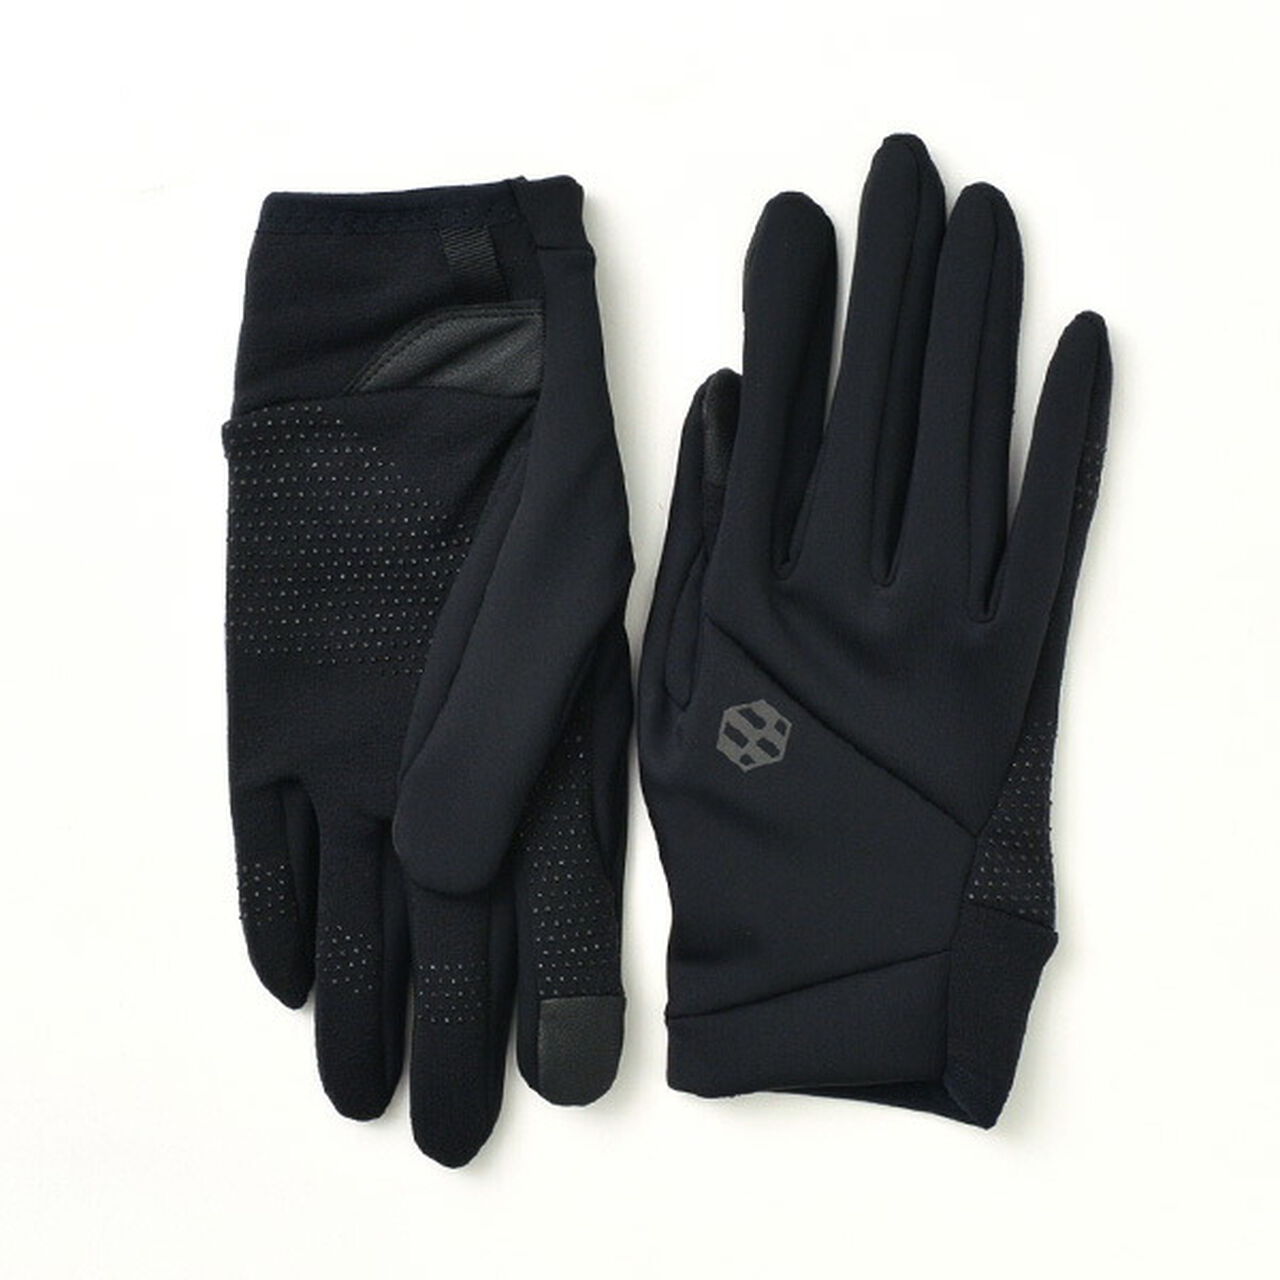 Bounce gloves,Black, large image number 0